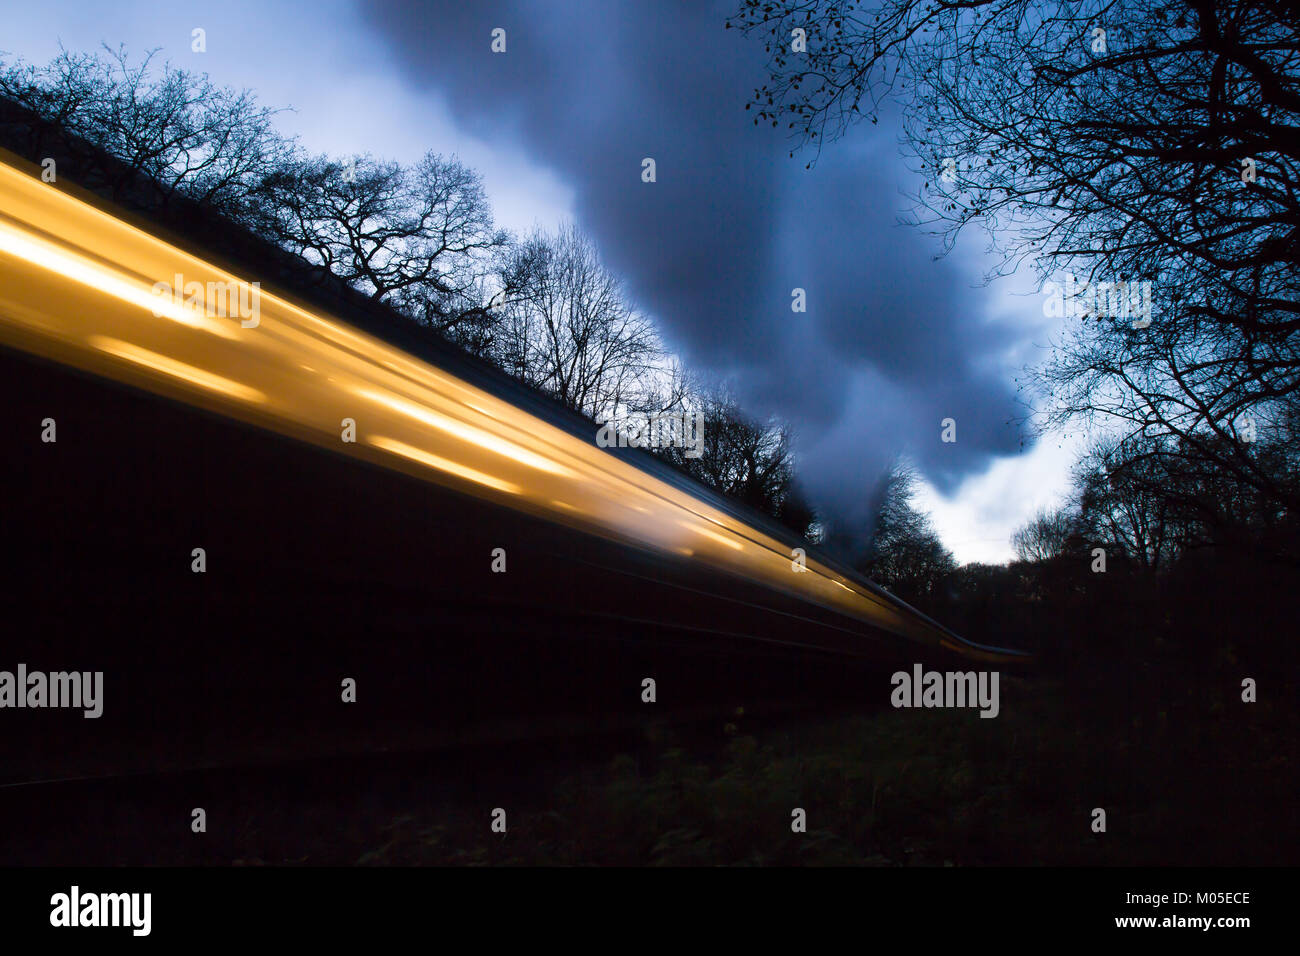 Die Severn Valley Railway carriage in Bewegung, Strecke mit niedrigem Winkel Landschaft schoß in der Dämmerung, kalten Abend. Konzept Fotografie: hohe Geschwindigkeit, Bewegung. Stockfoto